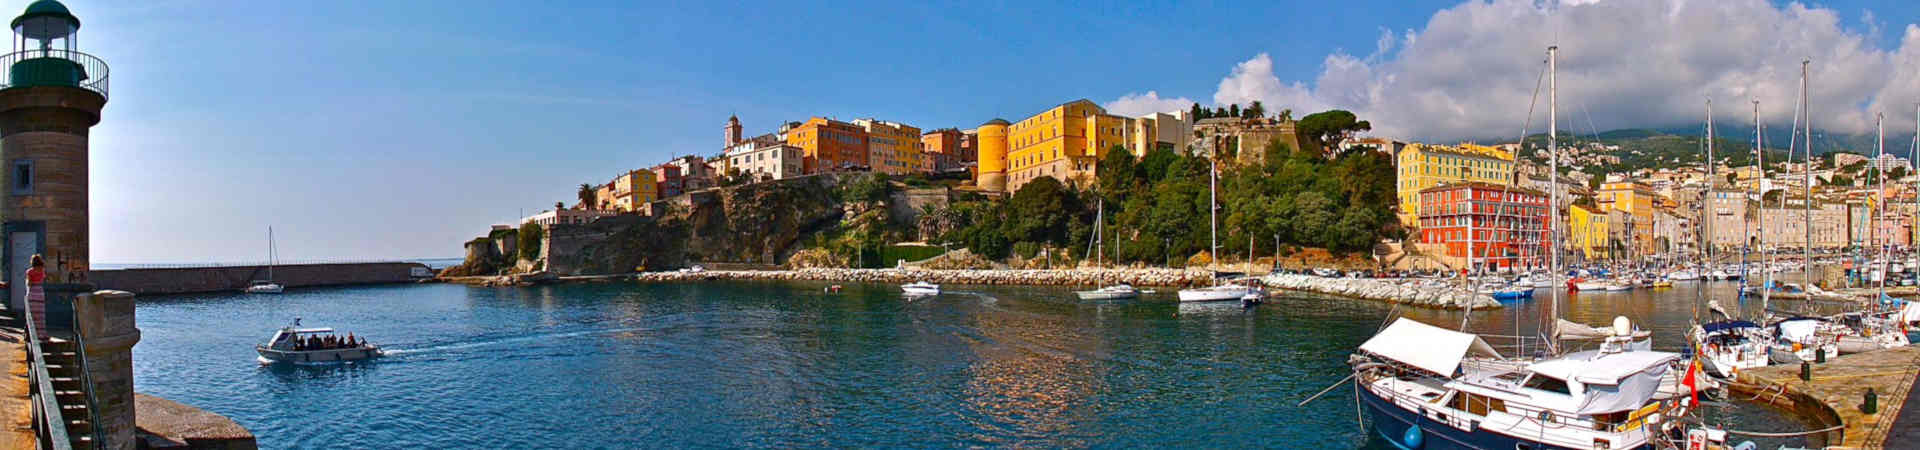 Image ressource du port de destination Bastia pour l'itinéraire du ferry Savone - Bastia